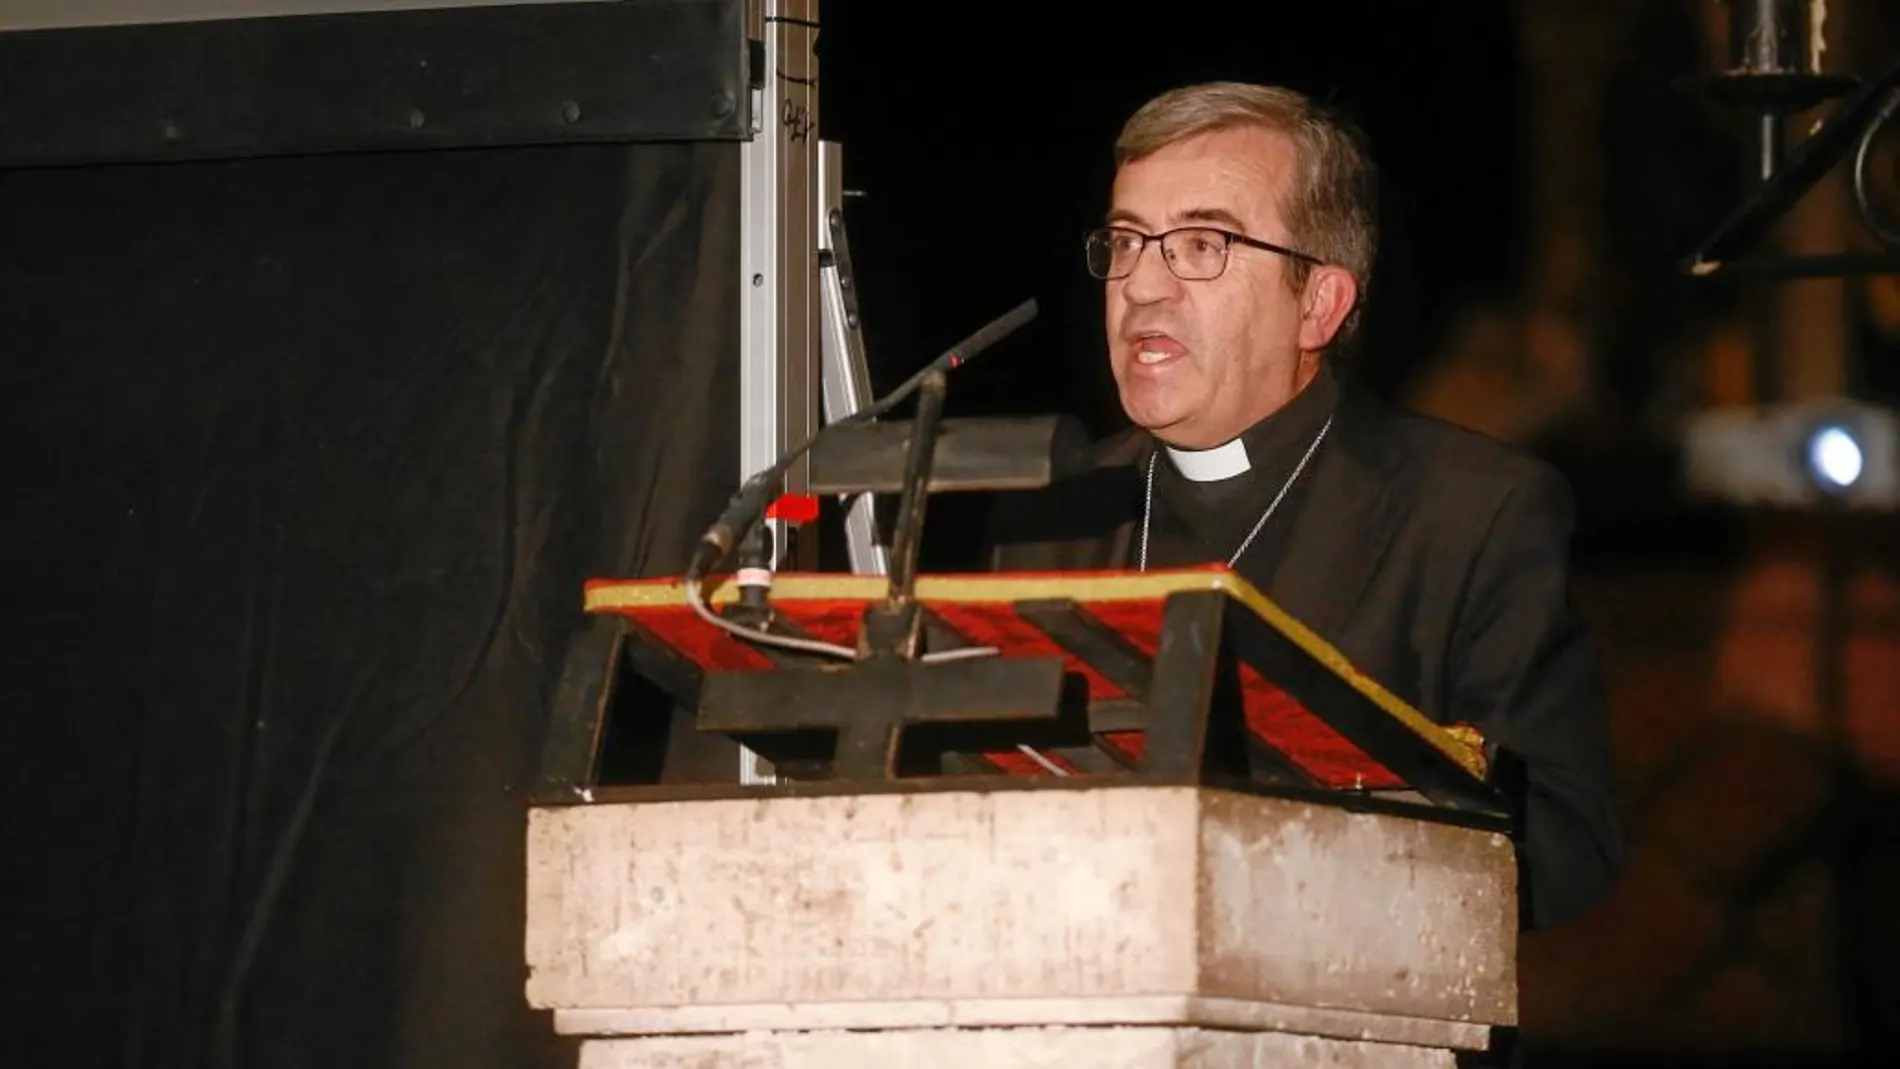 El obispo auxiliar de Valladolid, Monseñor Luis Argüello, pronuncia su Pregón Misionero